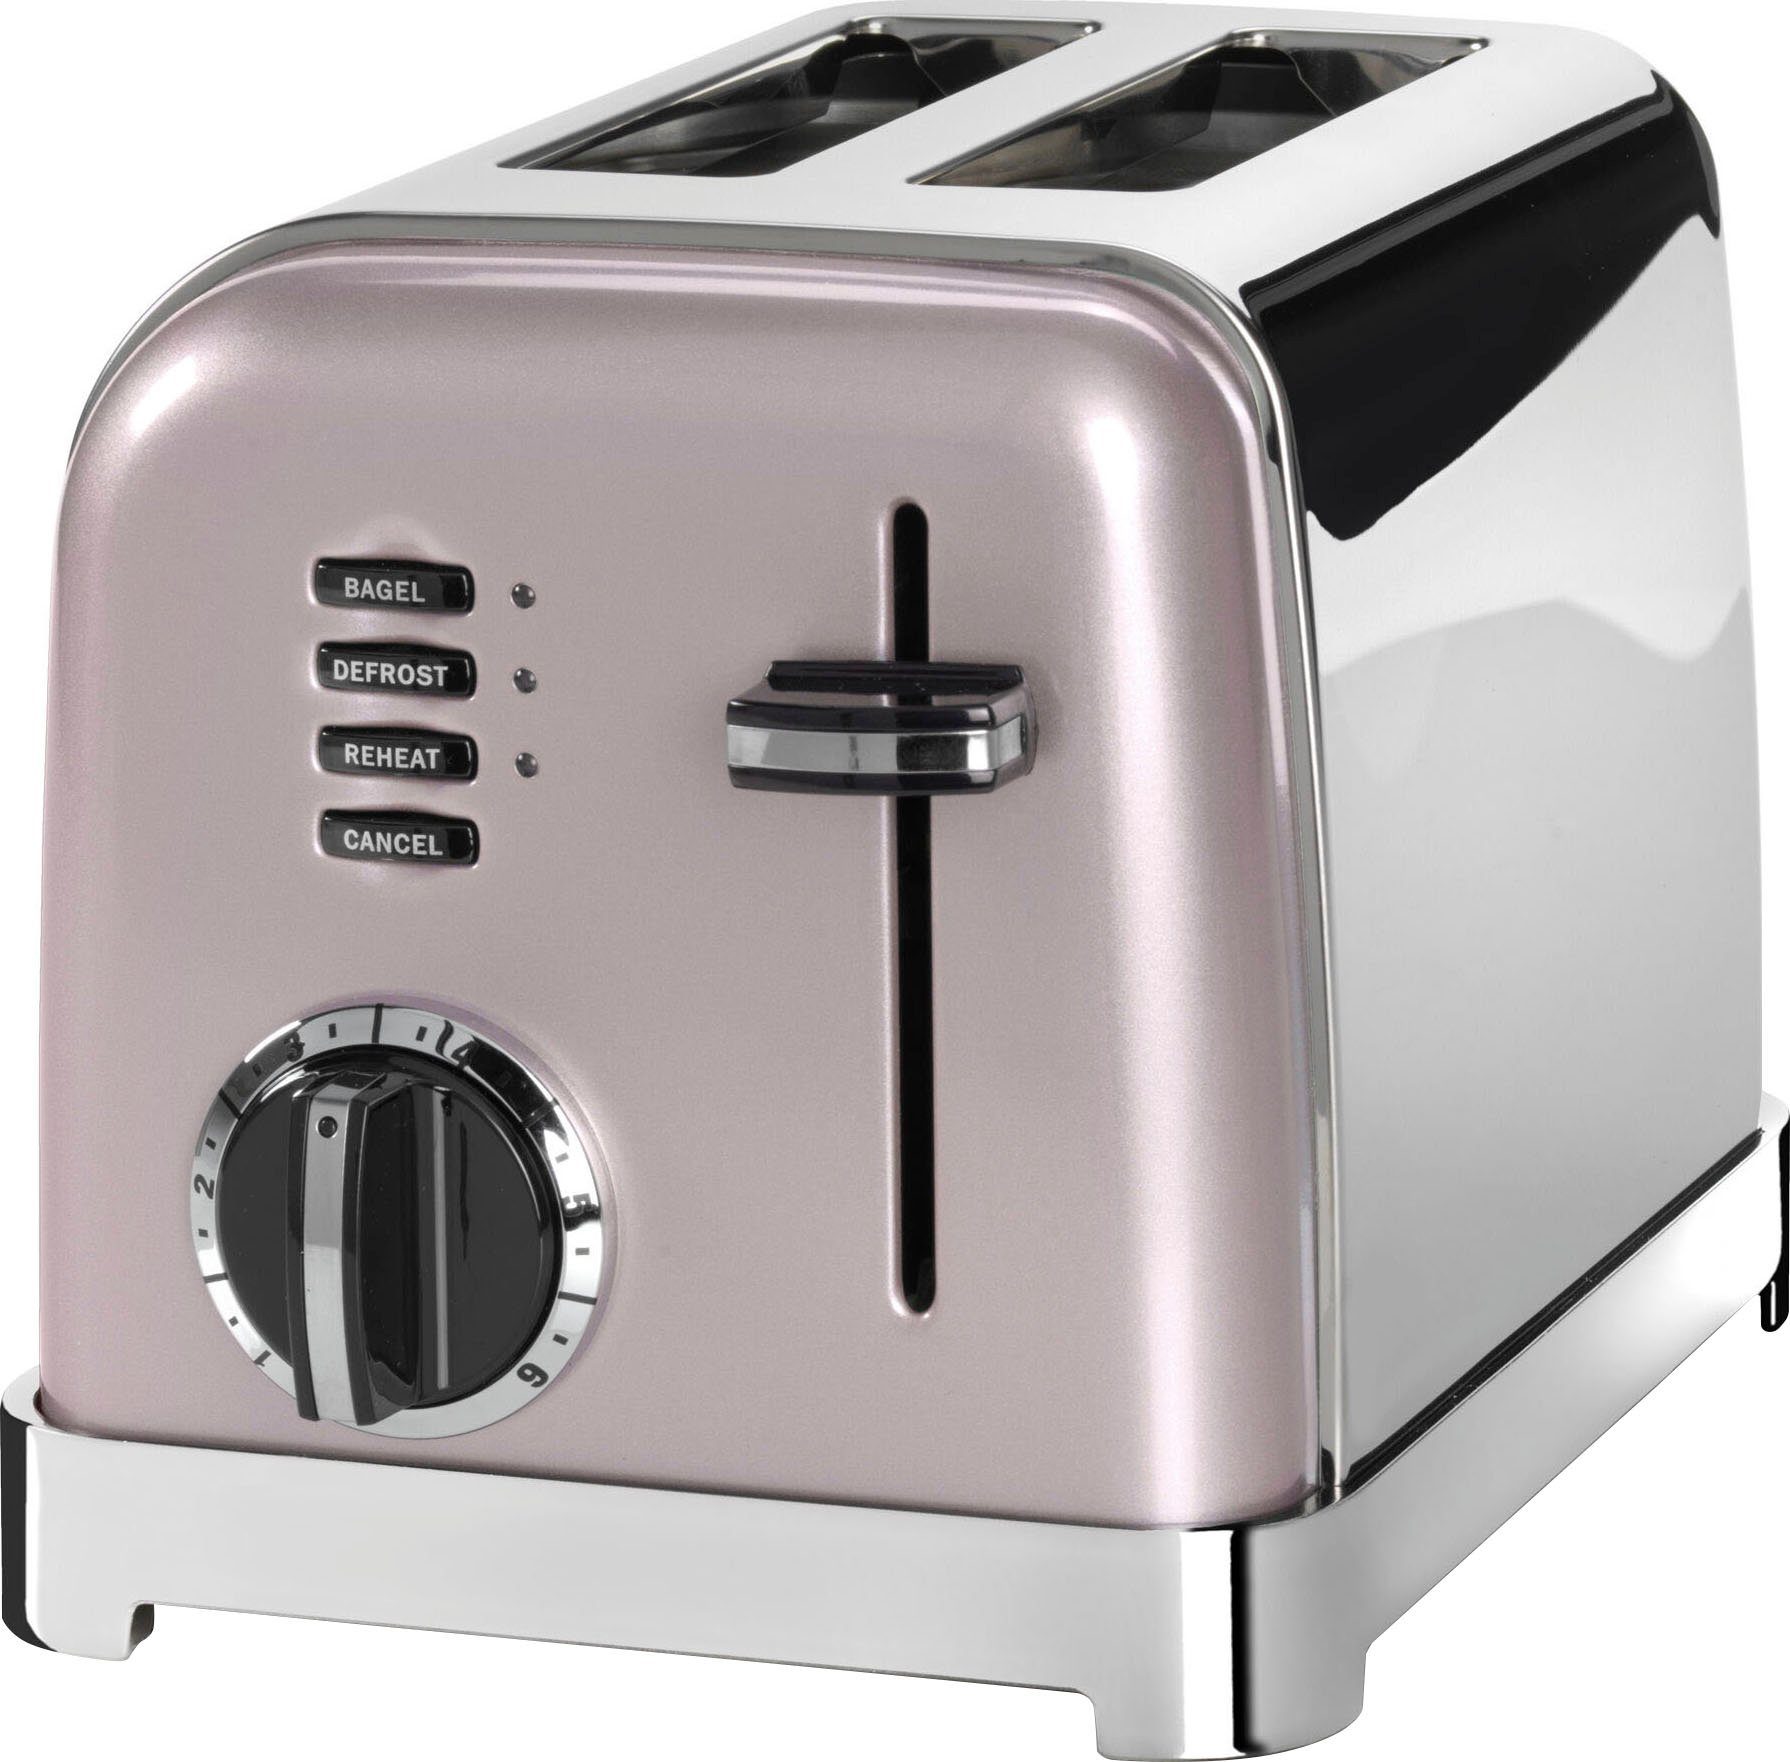 extra W, breite Retro für Toaster Cuisinart Toastschlitze, 2 Scheiben, 900 CPT160PIE, Design